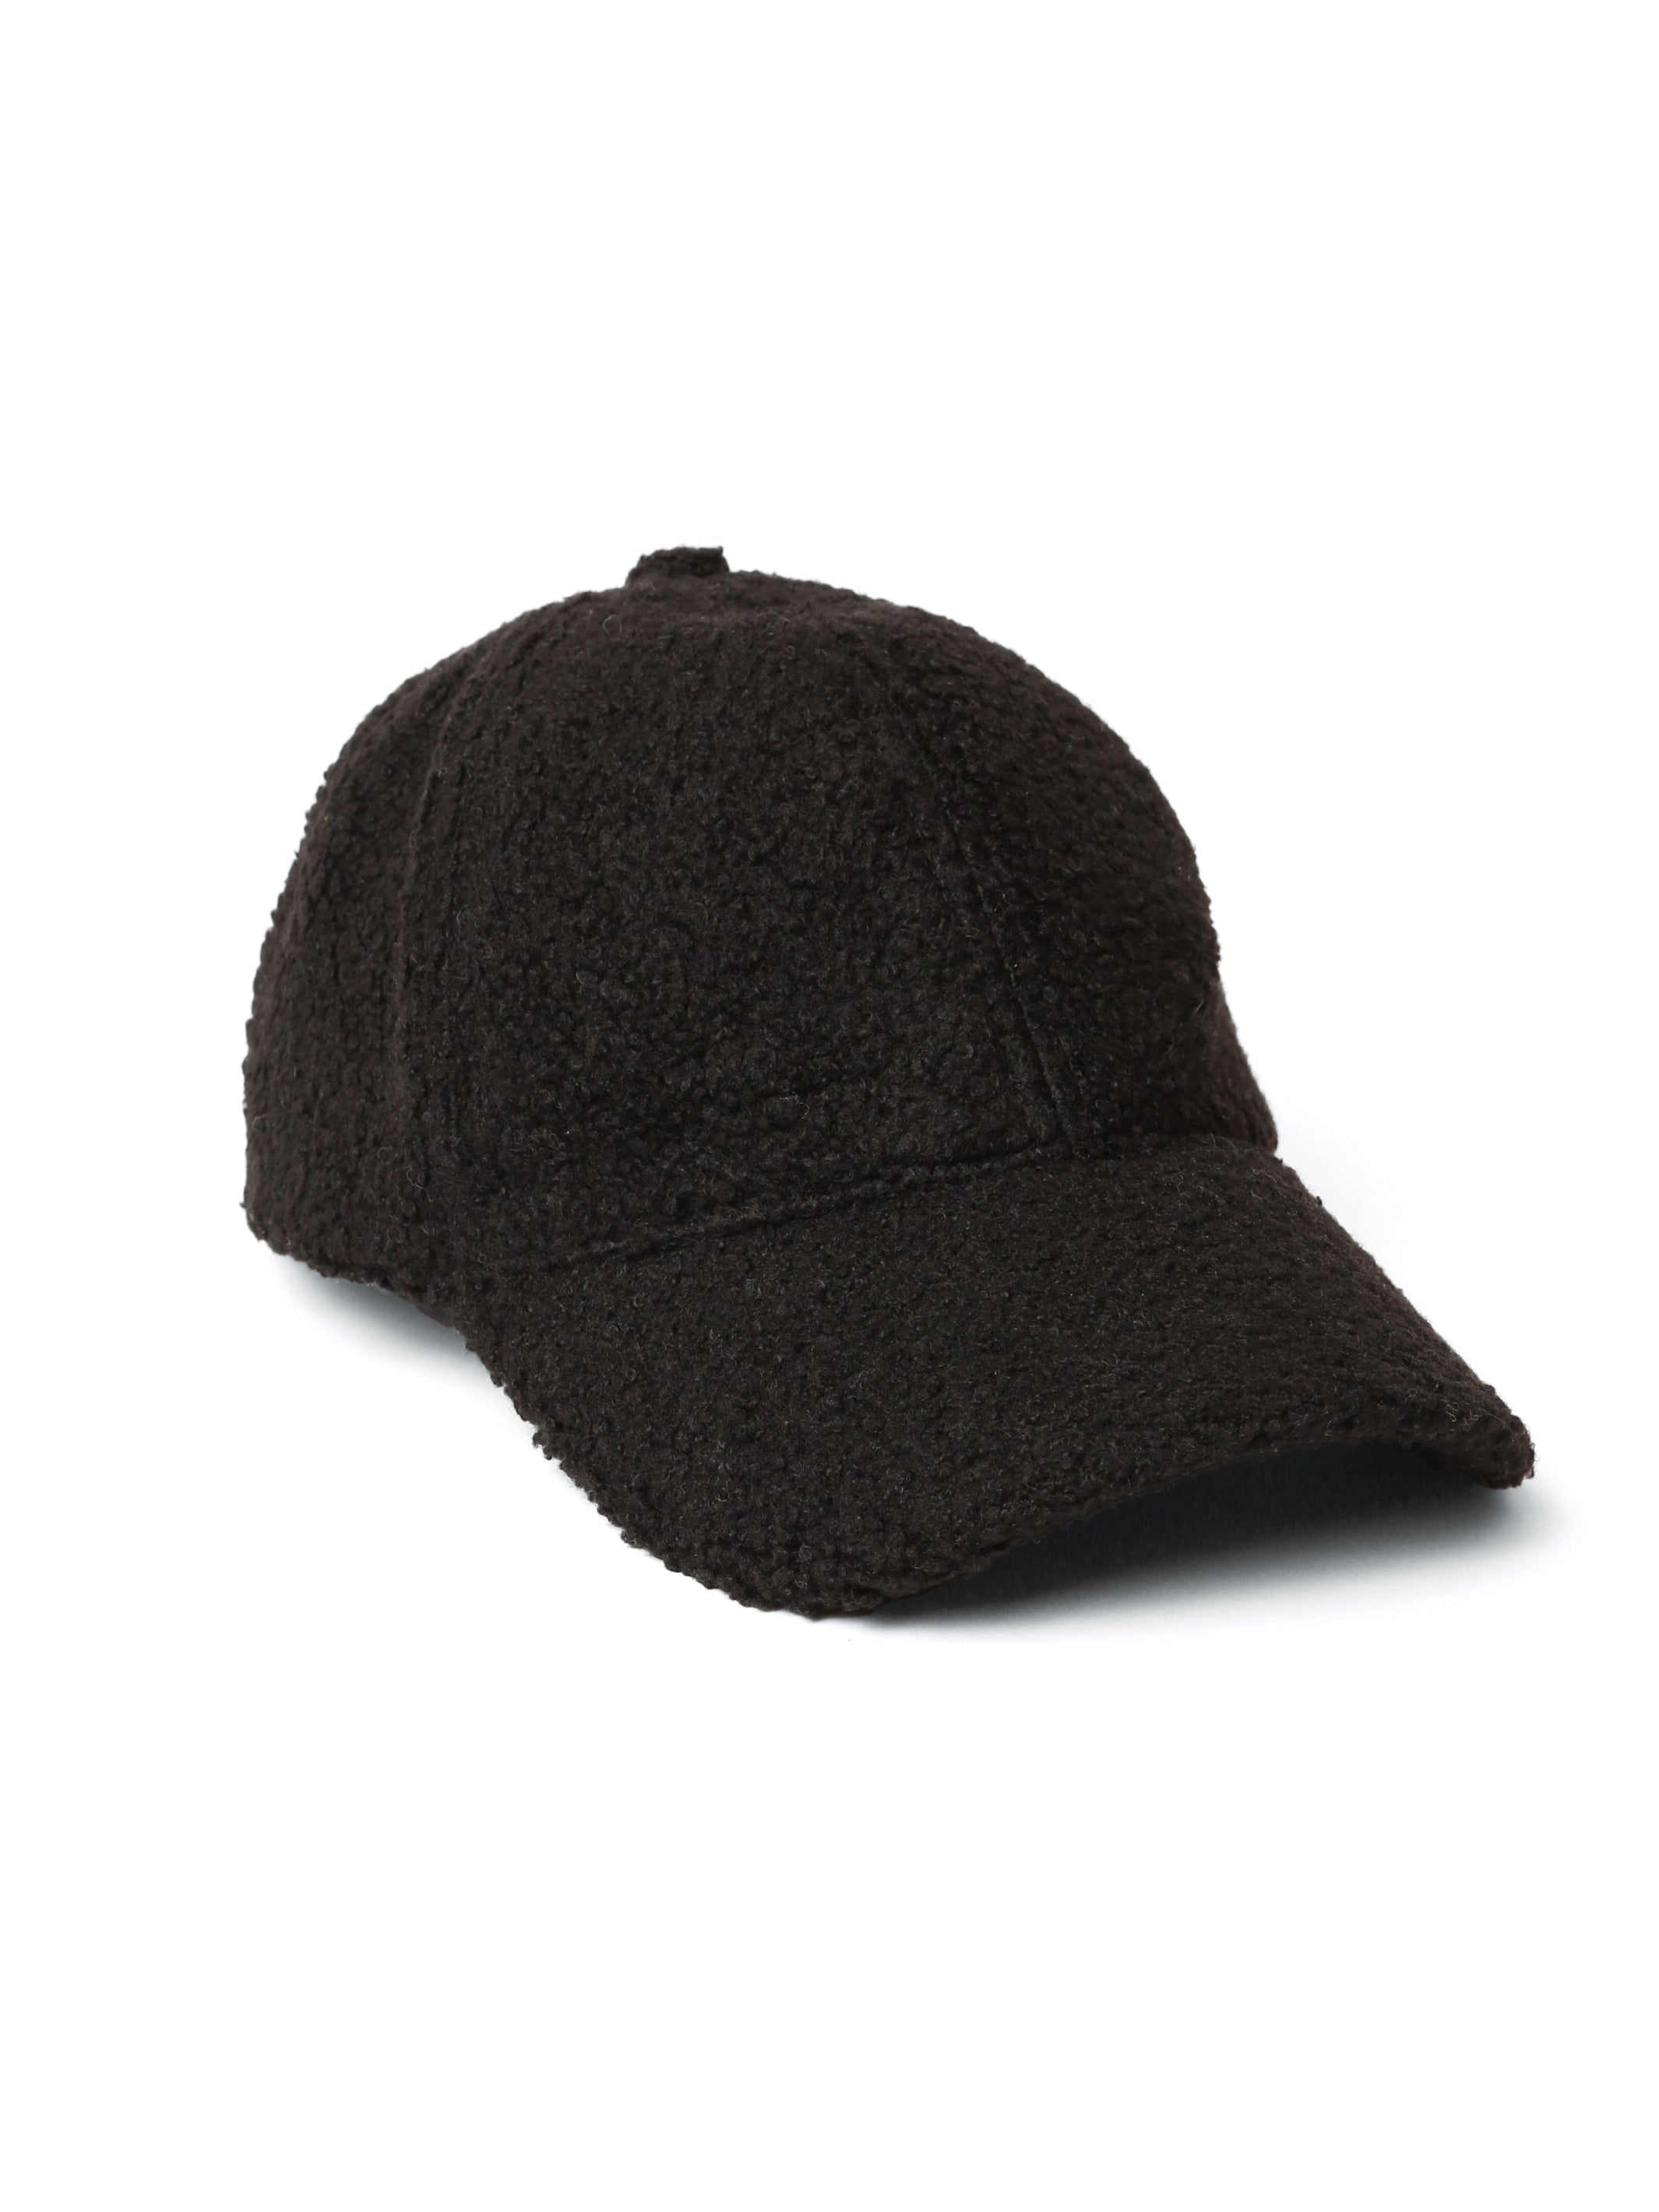 Micro Sherpa Cap in Black - BROOKLYN INDUSTRIES